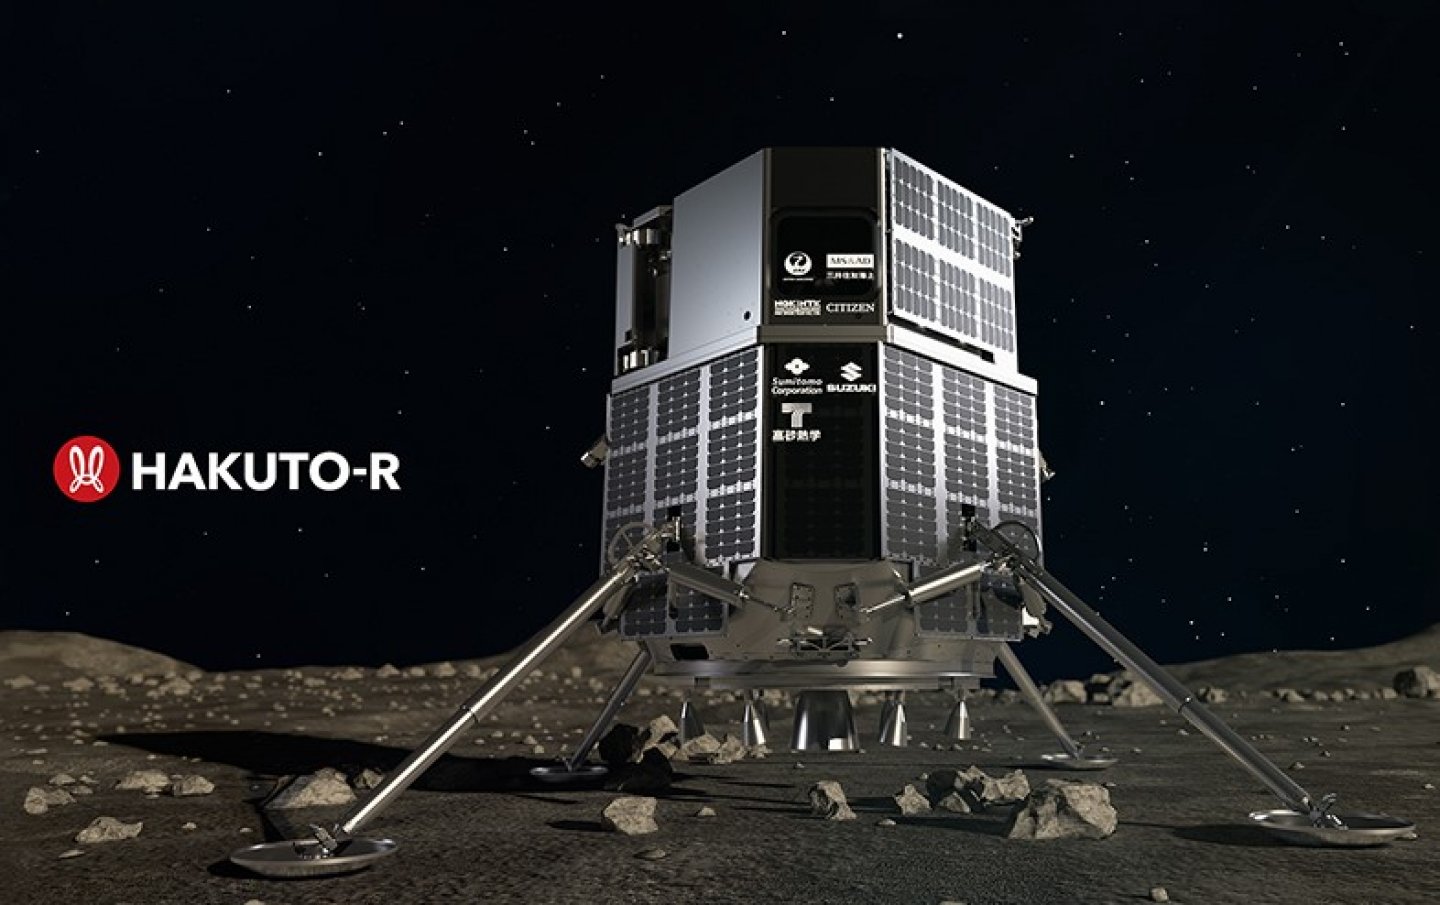 シチズン独自の素材「スーパーチタニウム™」製の月着陸船部品の試作品が完成〜民間月面探査プログラム「HAKUTO-R」に採用予定〜